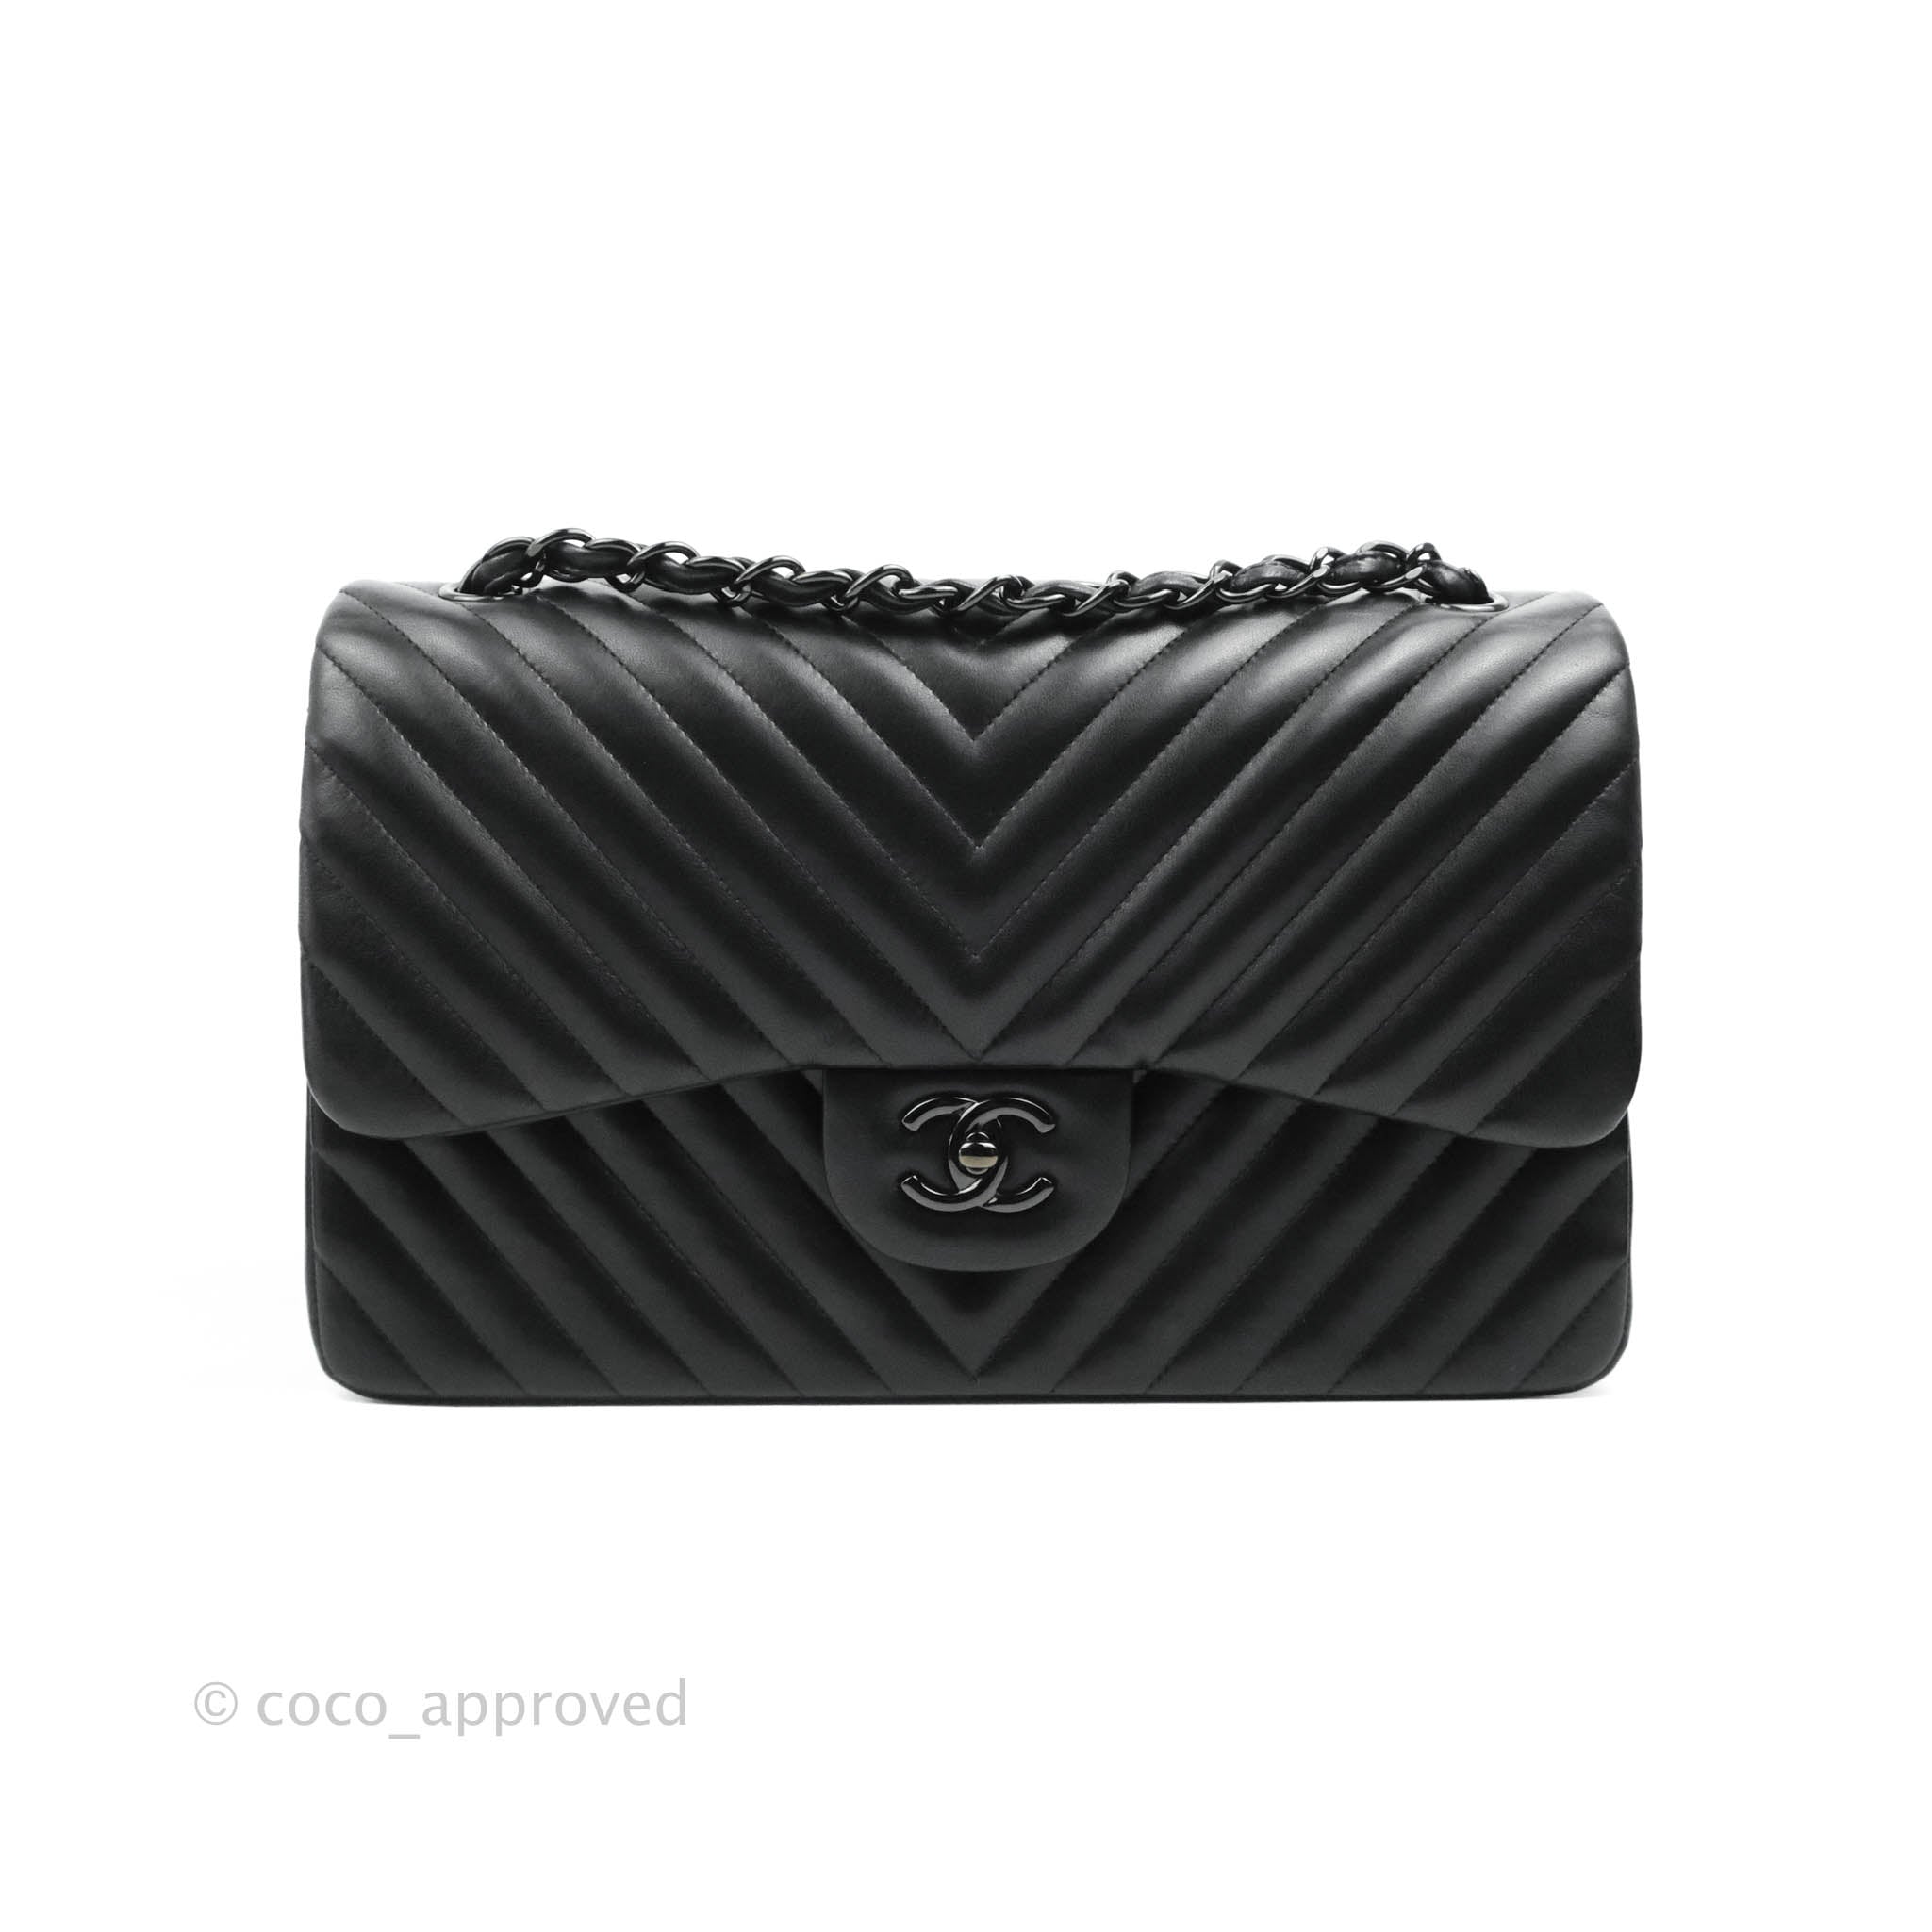 Chanel Caramel Bag - 16 For Sale on 1stDibs